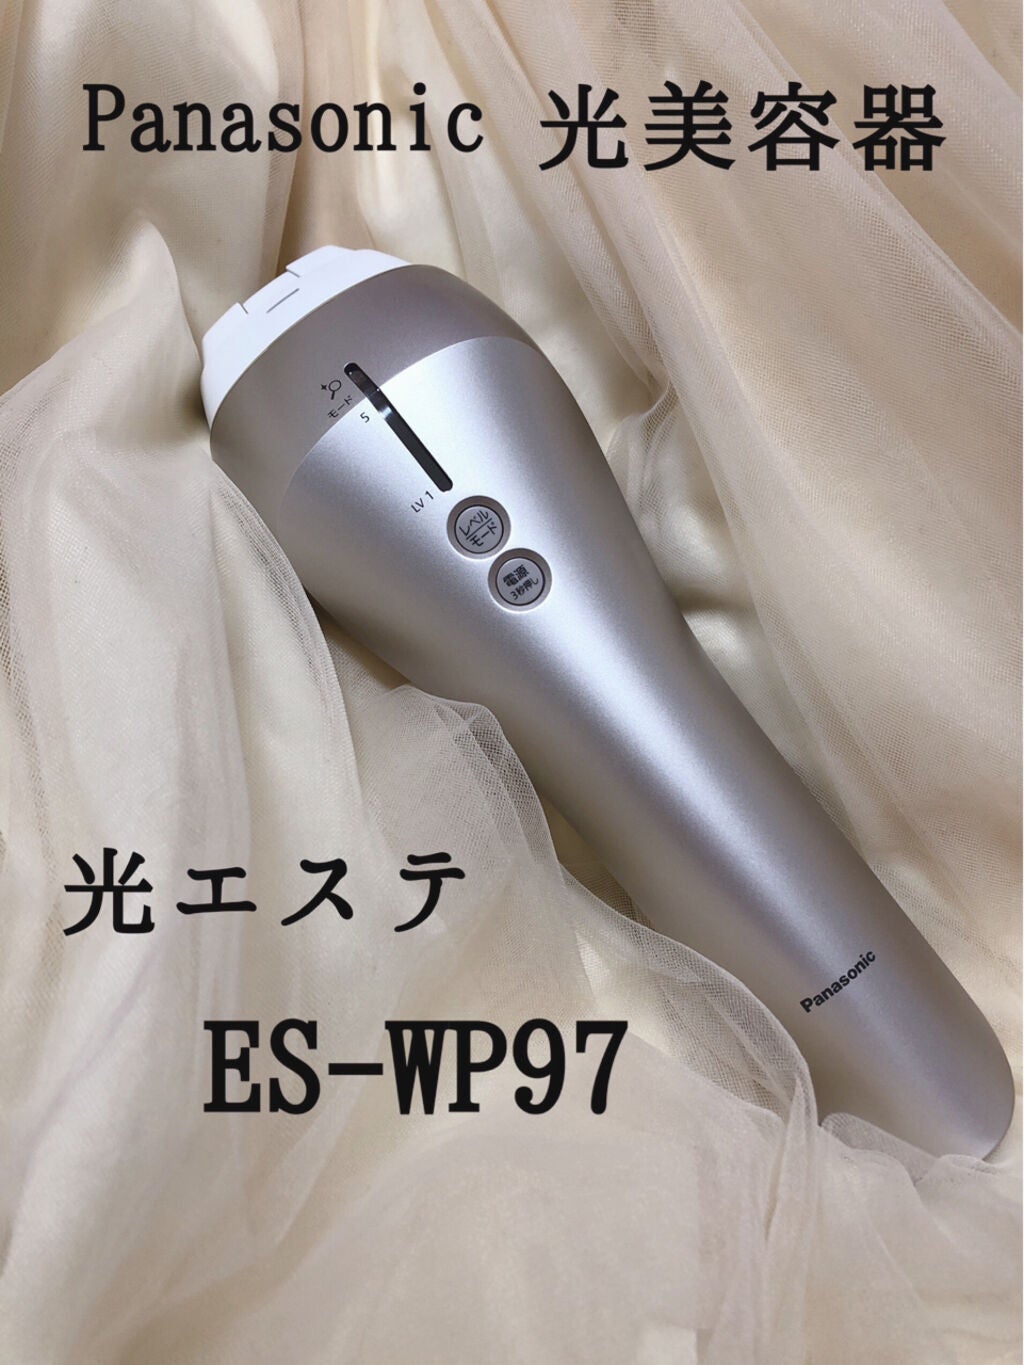 Panasonic 光エステ ES-CWP97-N(ES-WP97) - 美容/健康